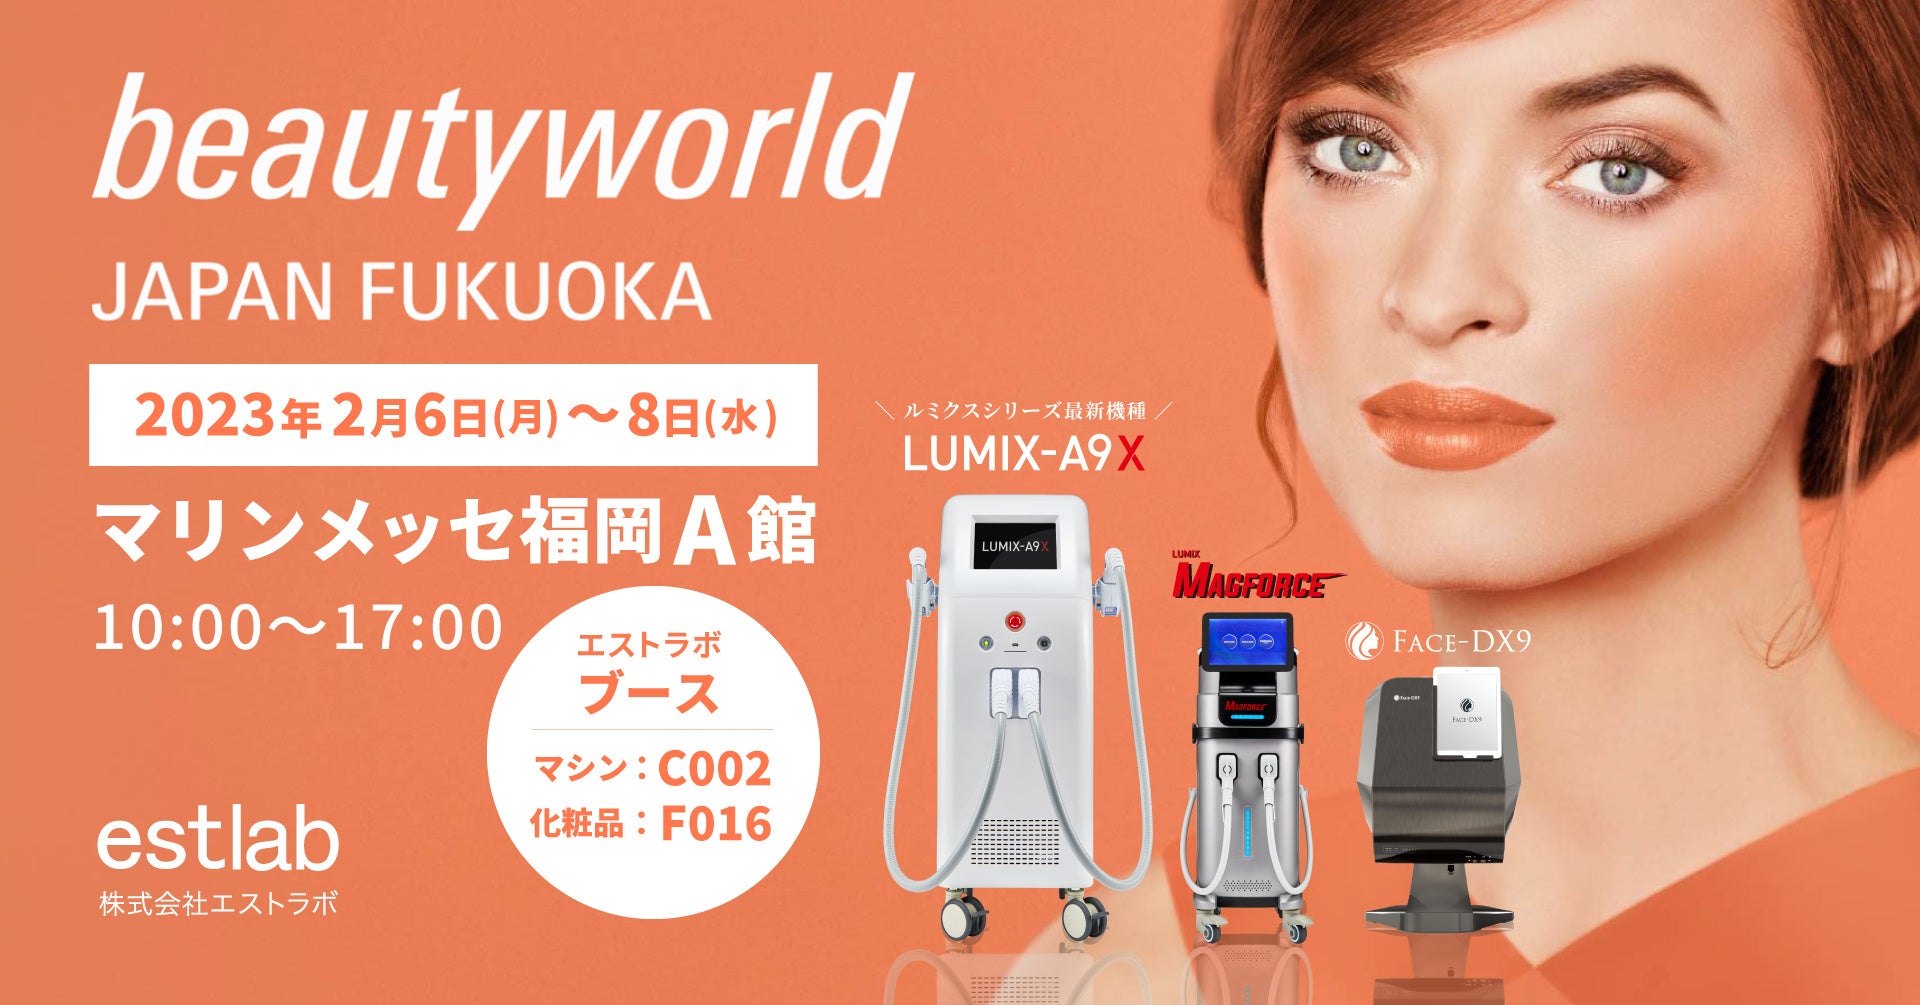 日本最大級の国際美容展示会“Beauty World Japan 福岡”に出展が決定！会期を3日間・会場をマリンメッセ福岡へ規模拡大し開催♪